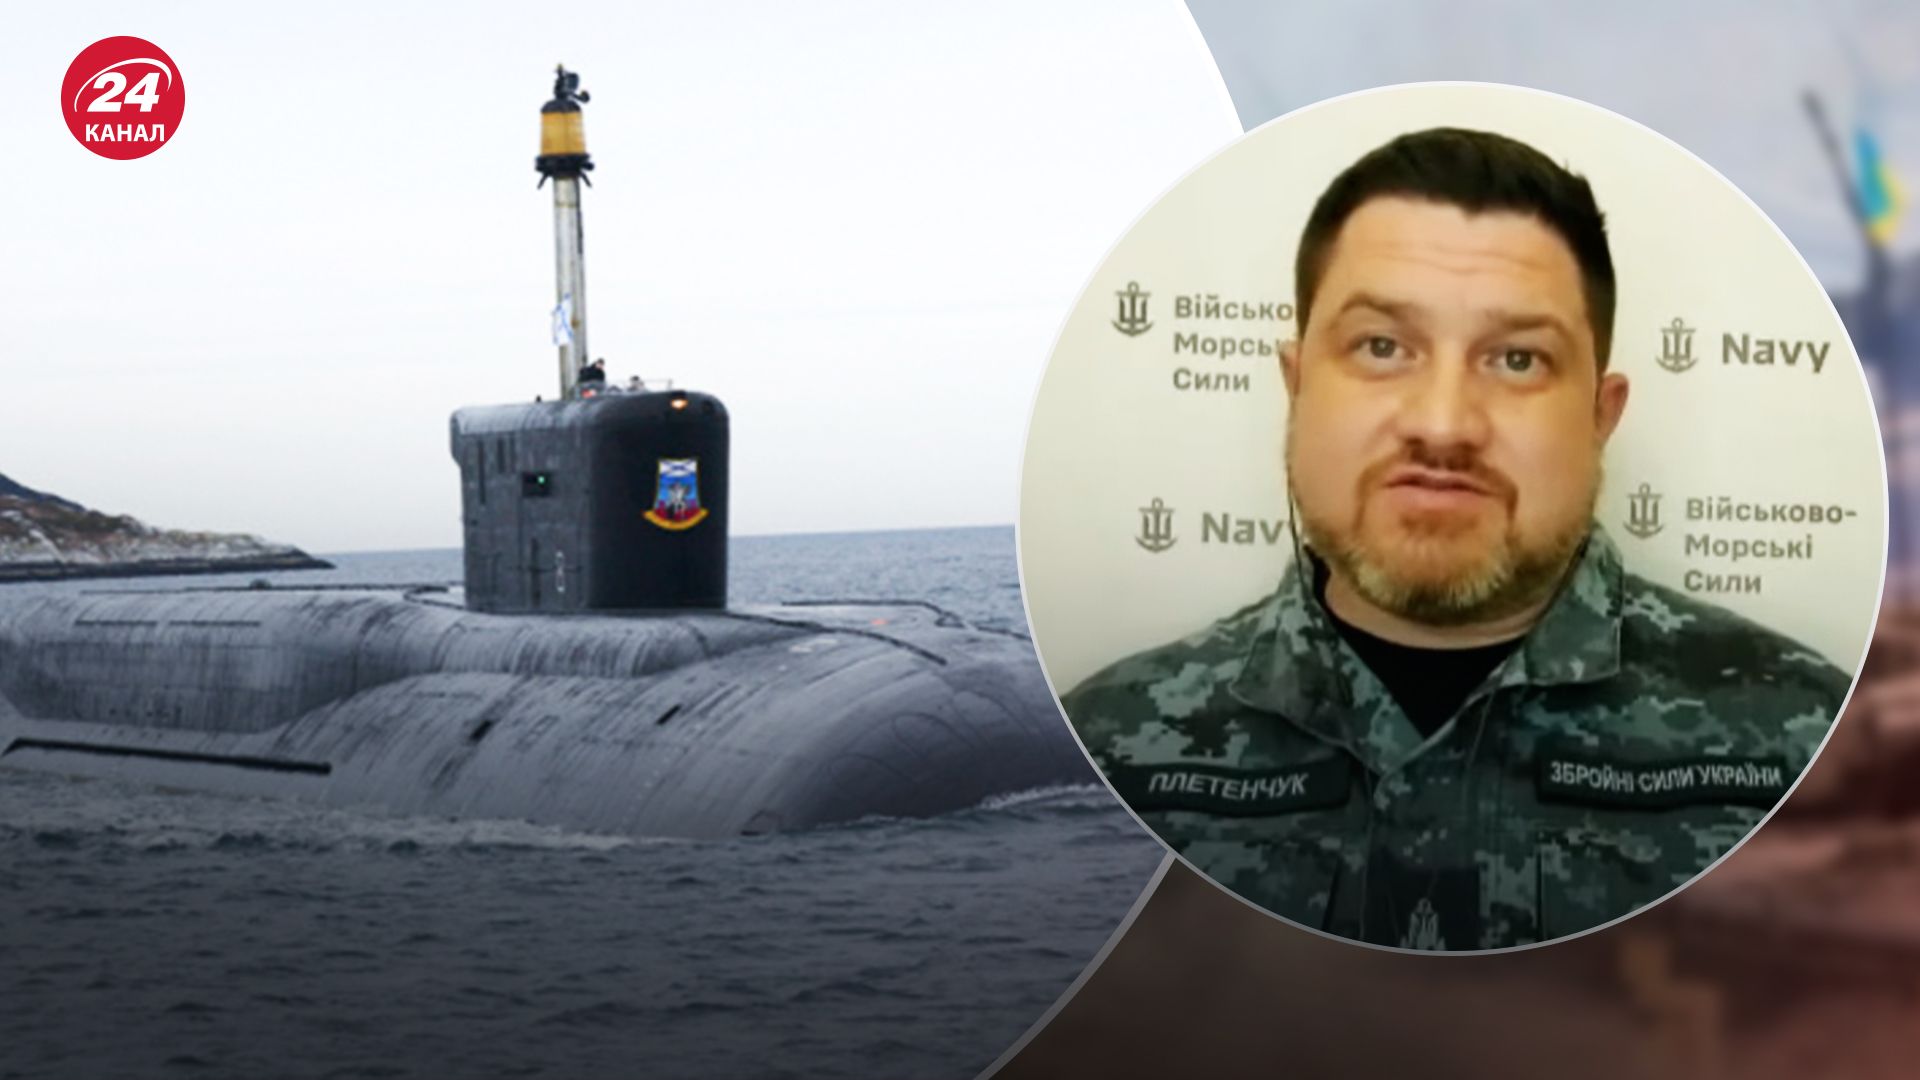 Плетенчук рассказал подробности вывода российской подводной лодки с "Калибрами" в Черное море